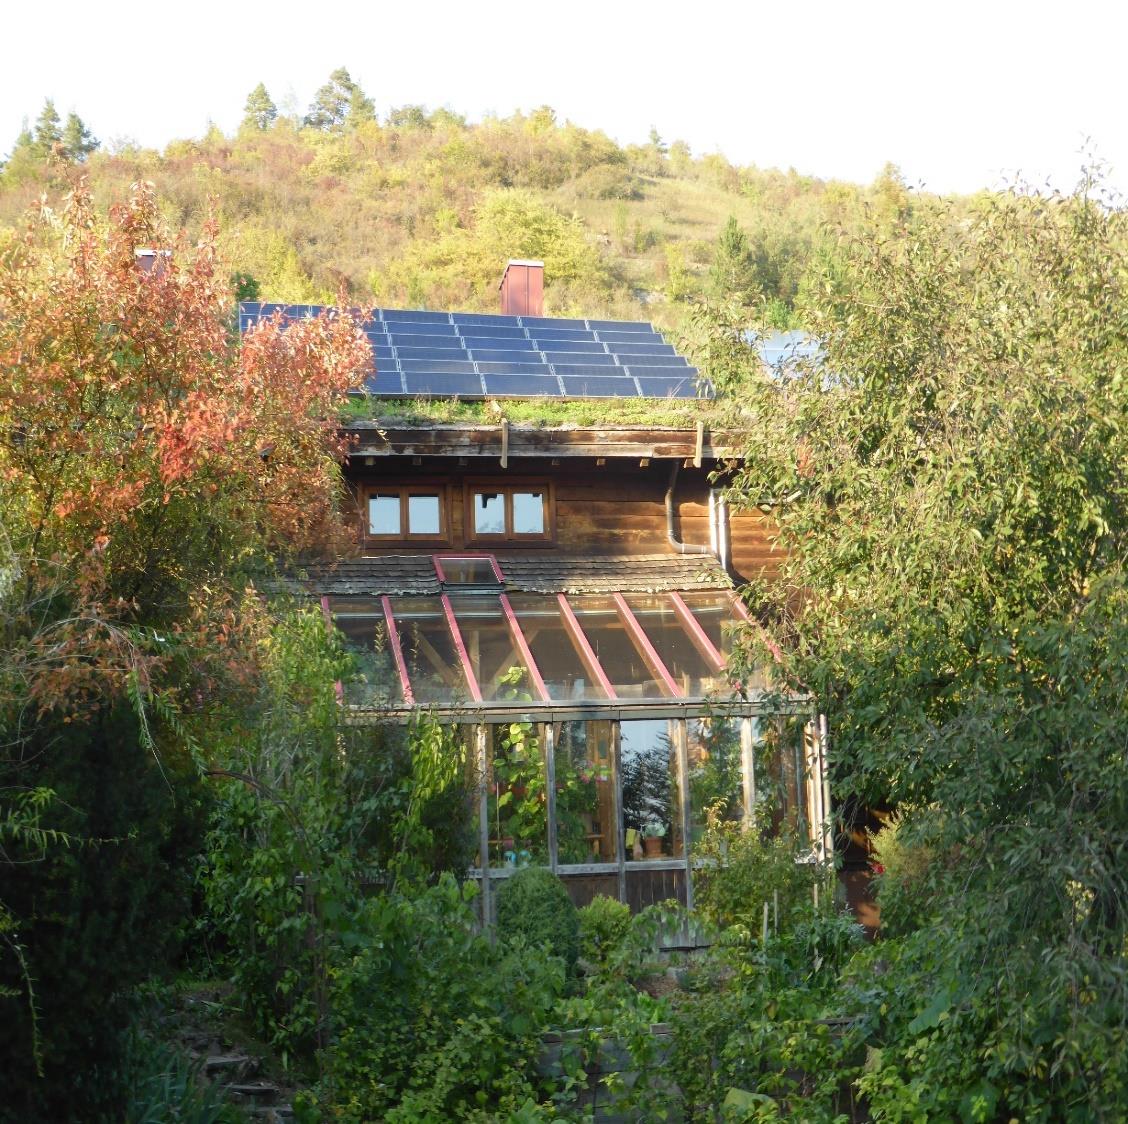 100% Erneuerbare Energien Haus von Hans-Josef Fell seit 1995 Baustoffe: Holz, Grasdach: Kohlenstoffsenken Strom: Sommer: